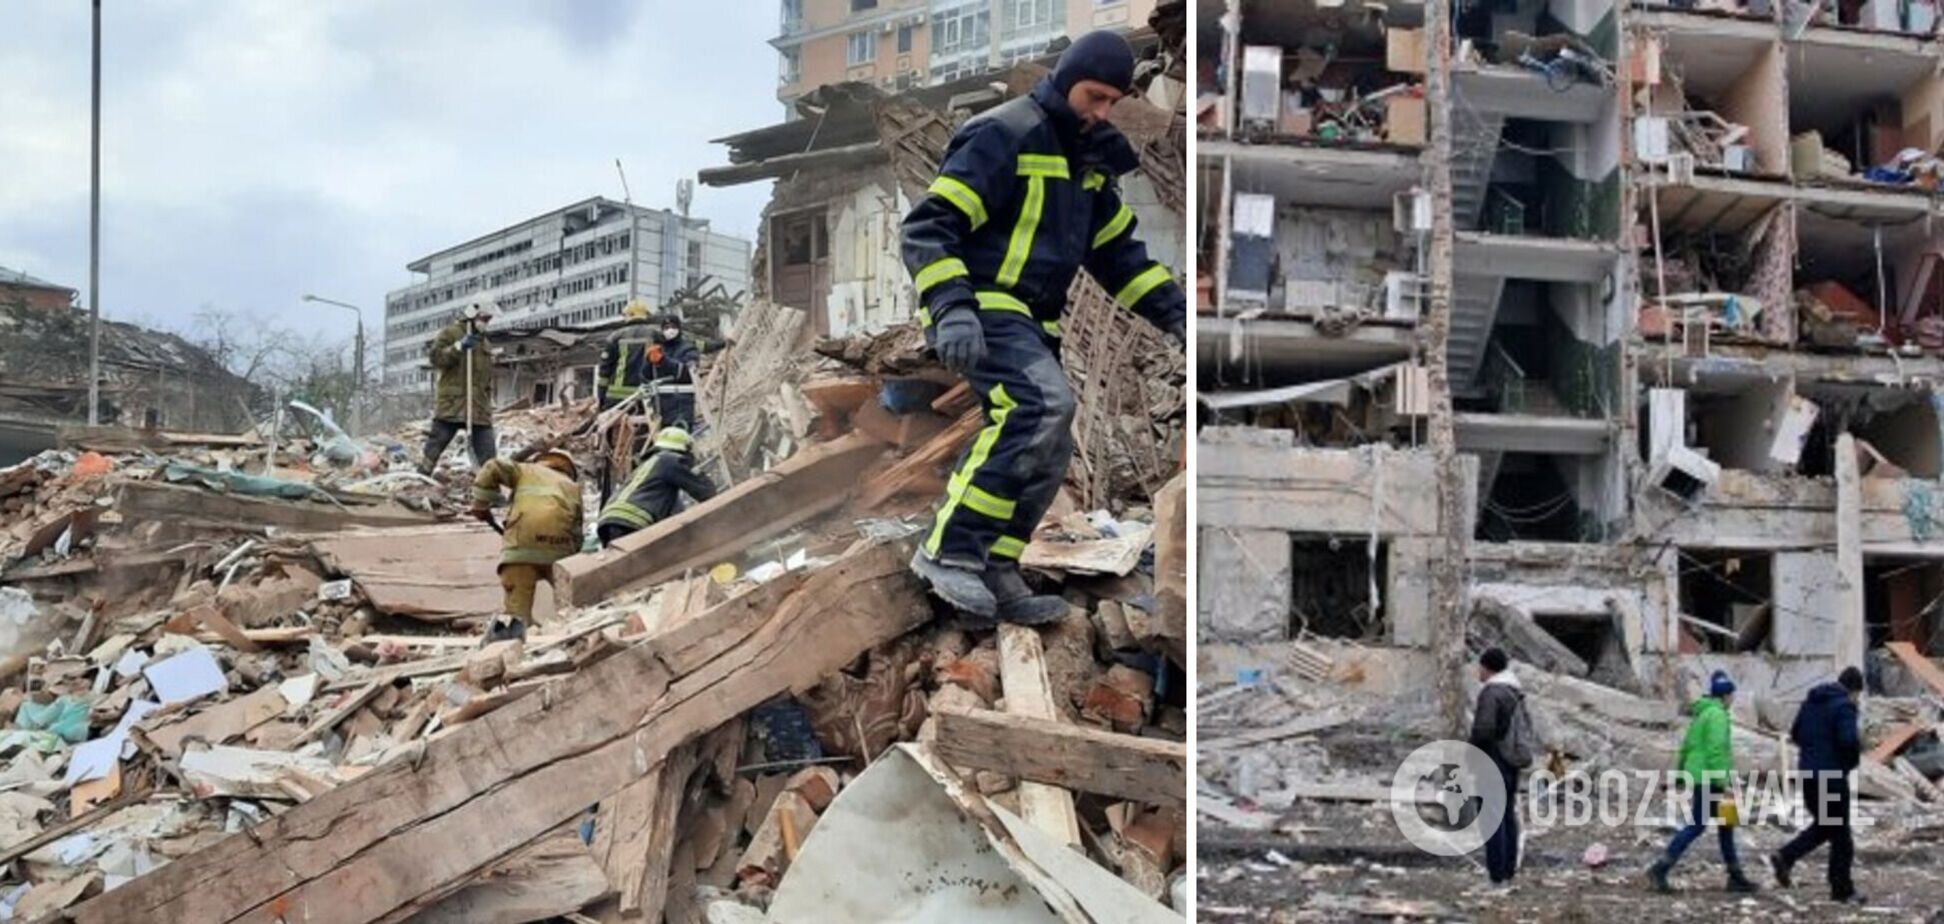 'Харьков – это катастрофа': в МВД заявили, что оккупанты разрушают город по прямому указанию Путина. Фото и видео